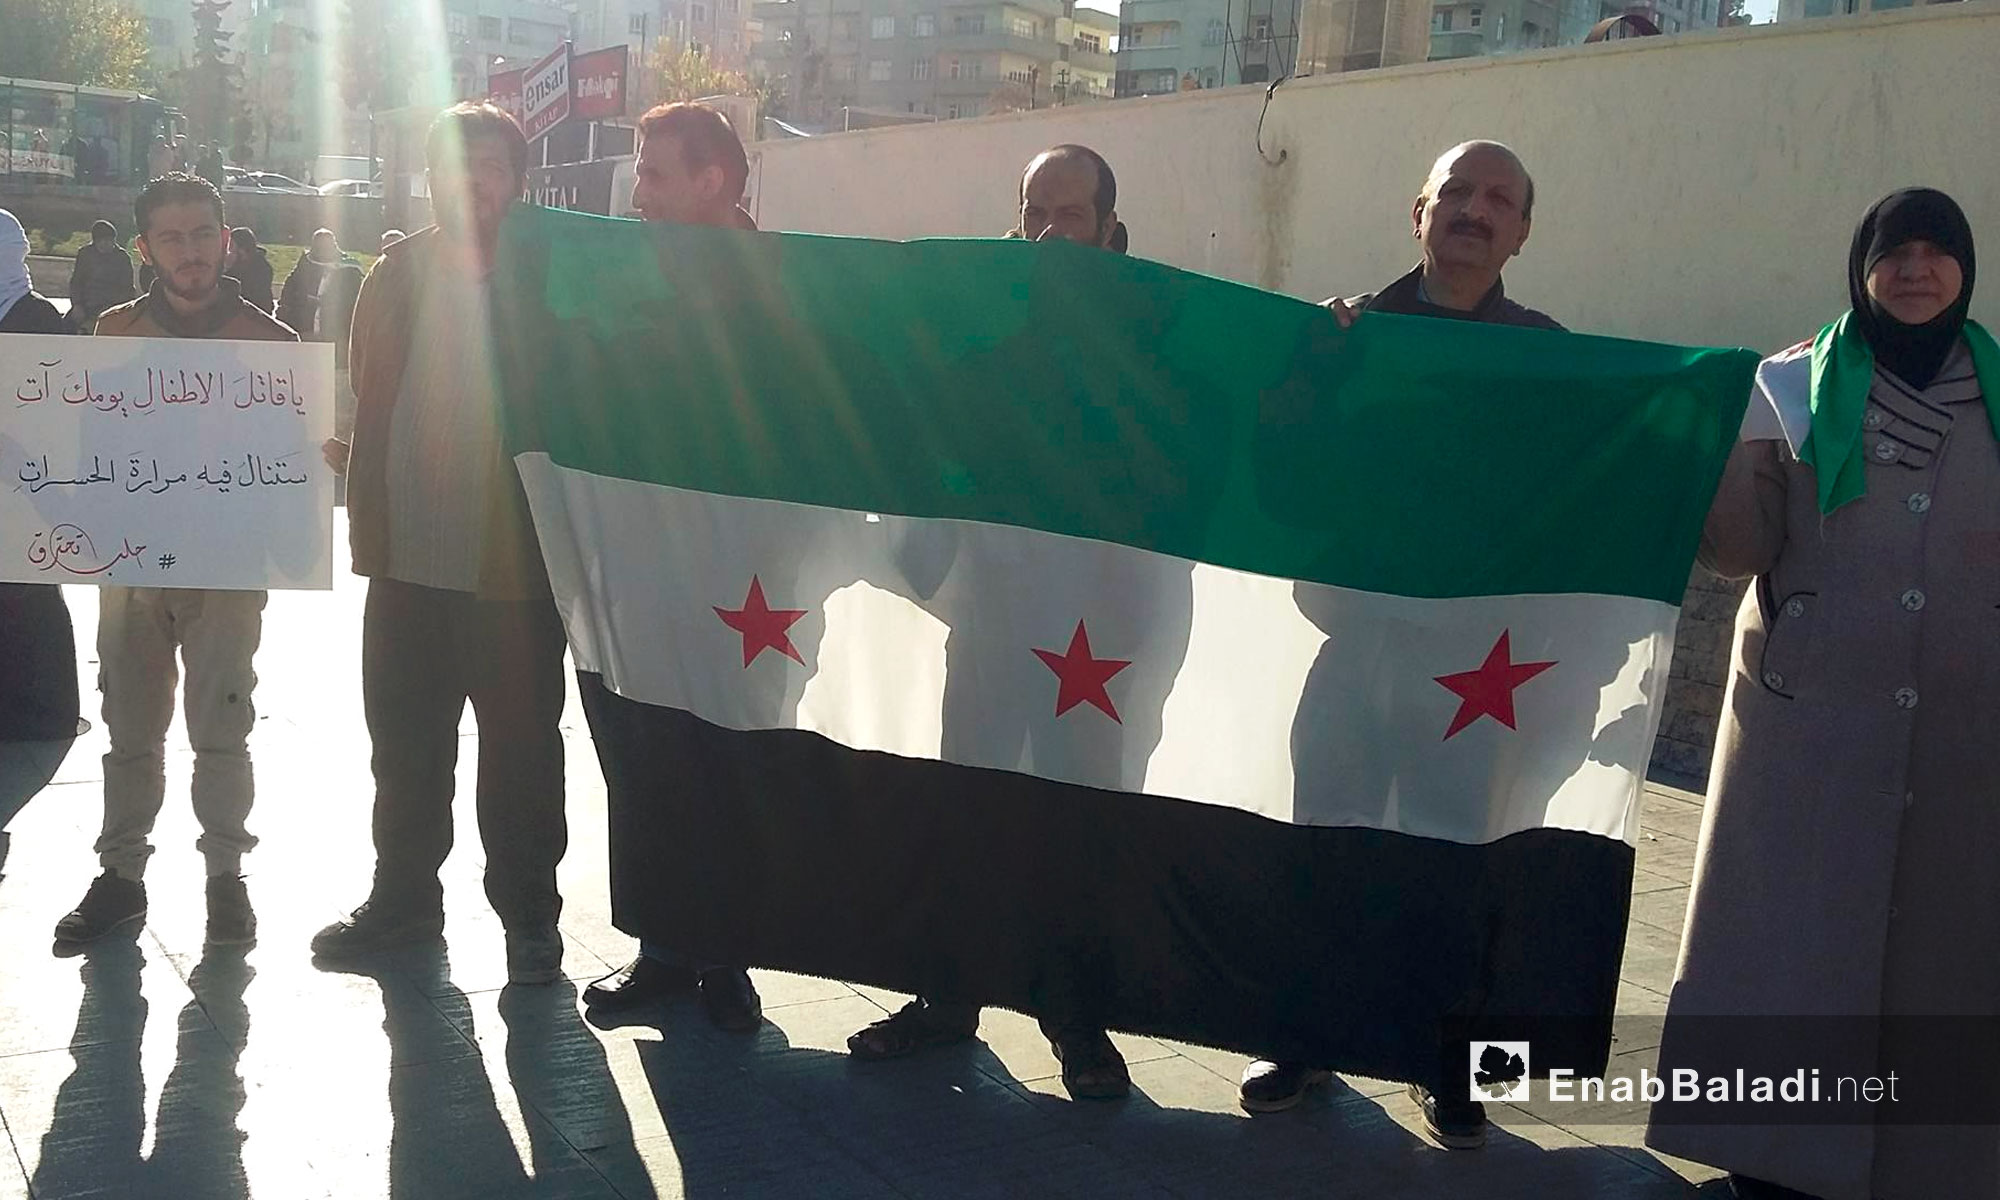 سوريون يحملون علم الثورة في مدينة أورفة التركية - 25 تشرين الثاني 2016 (عنب بلدي)